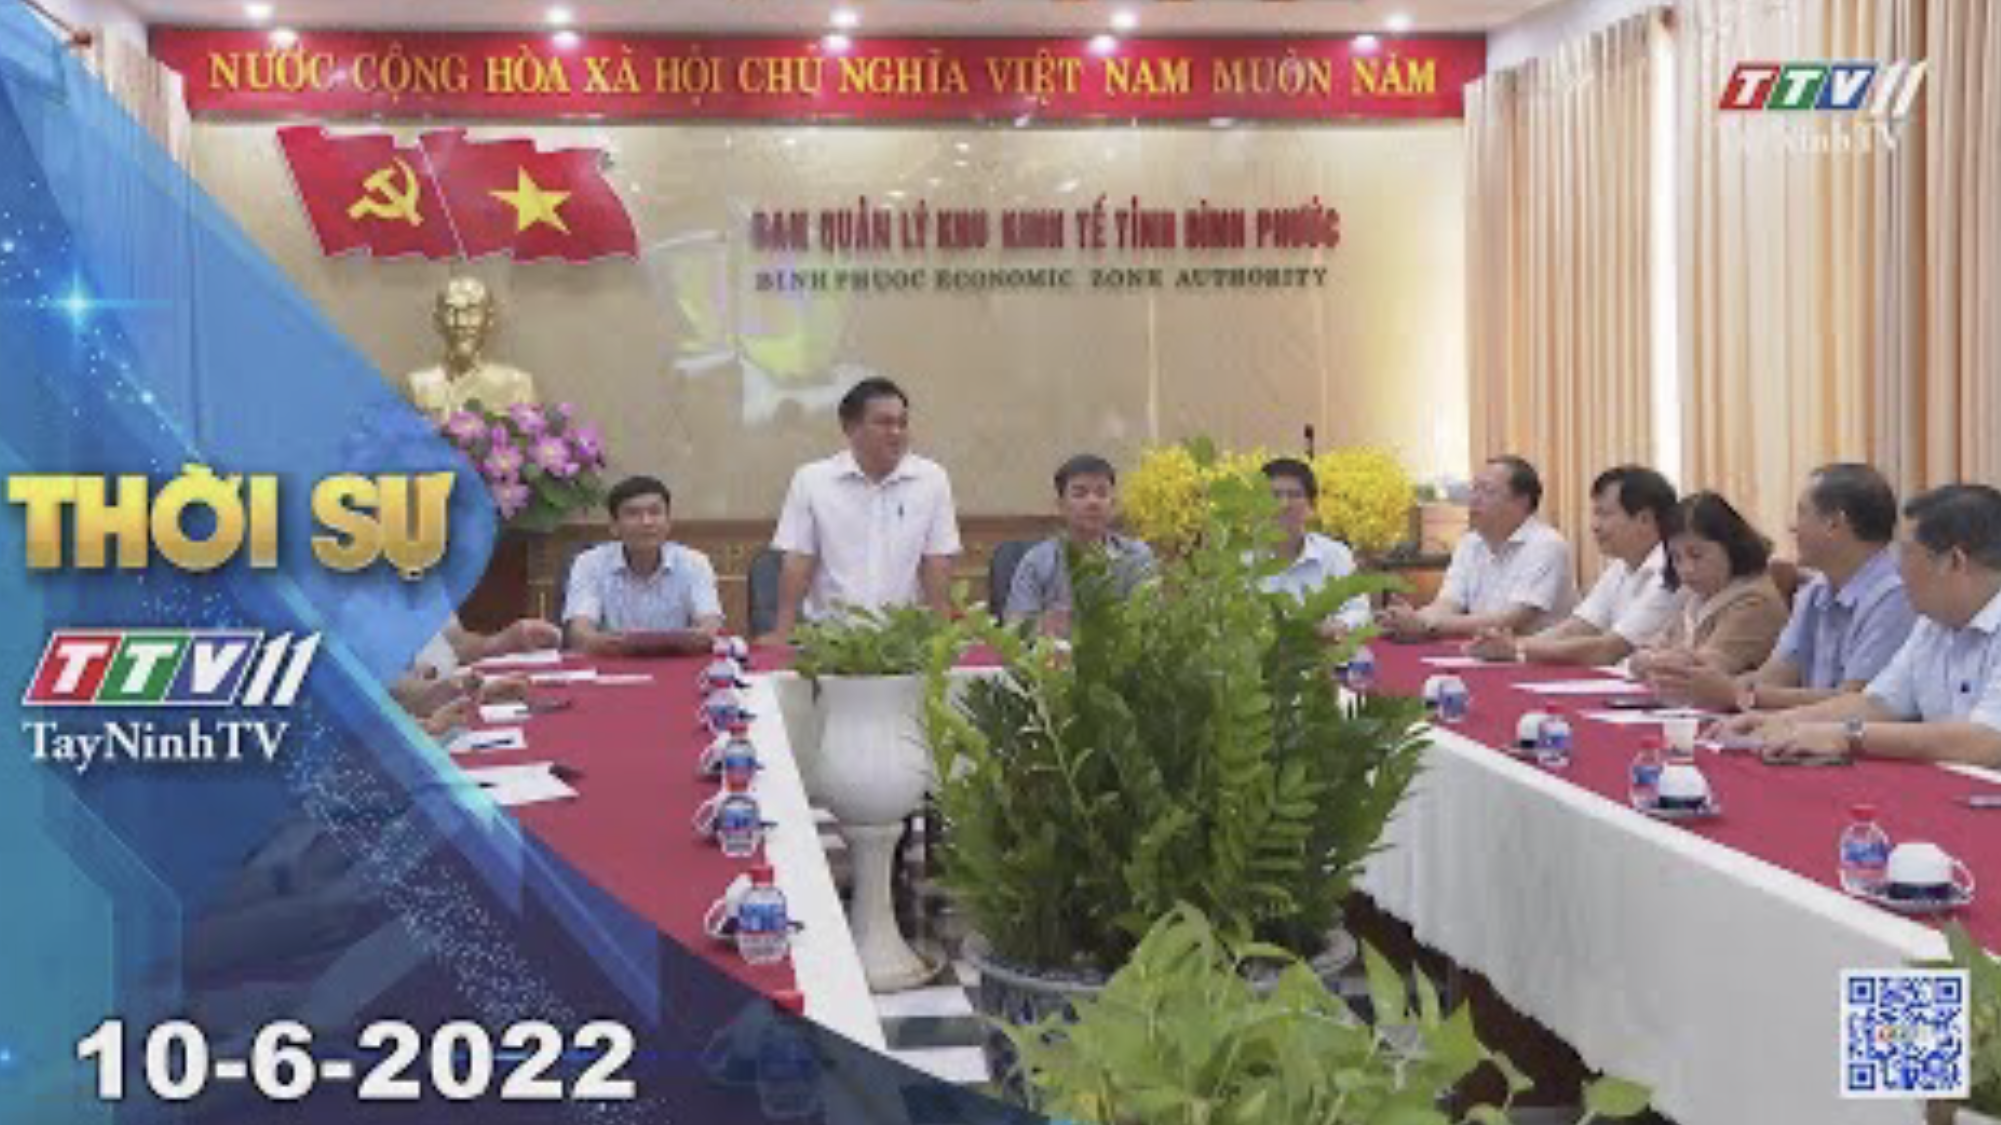 Thời sự Tây Ninh 10-6-2022 | Tin tức hôm nay | TayNinhTV